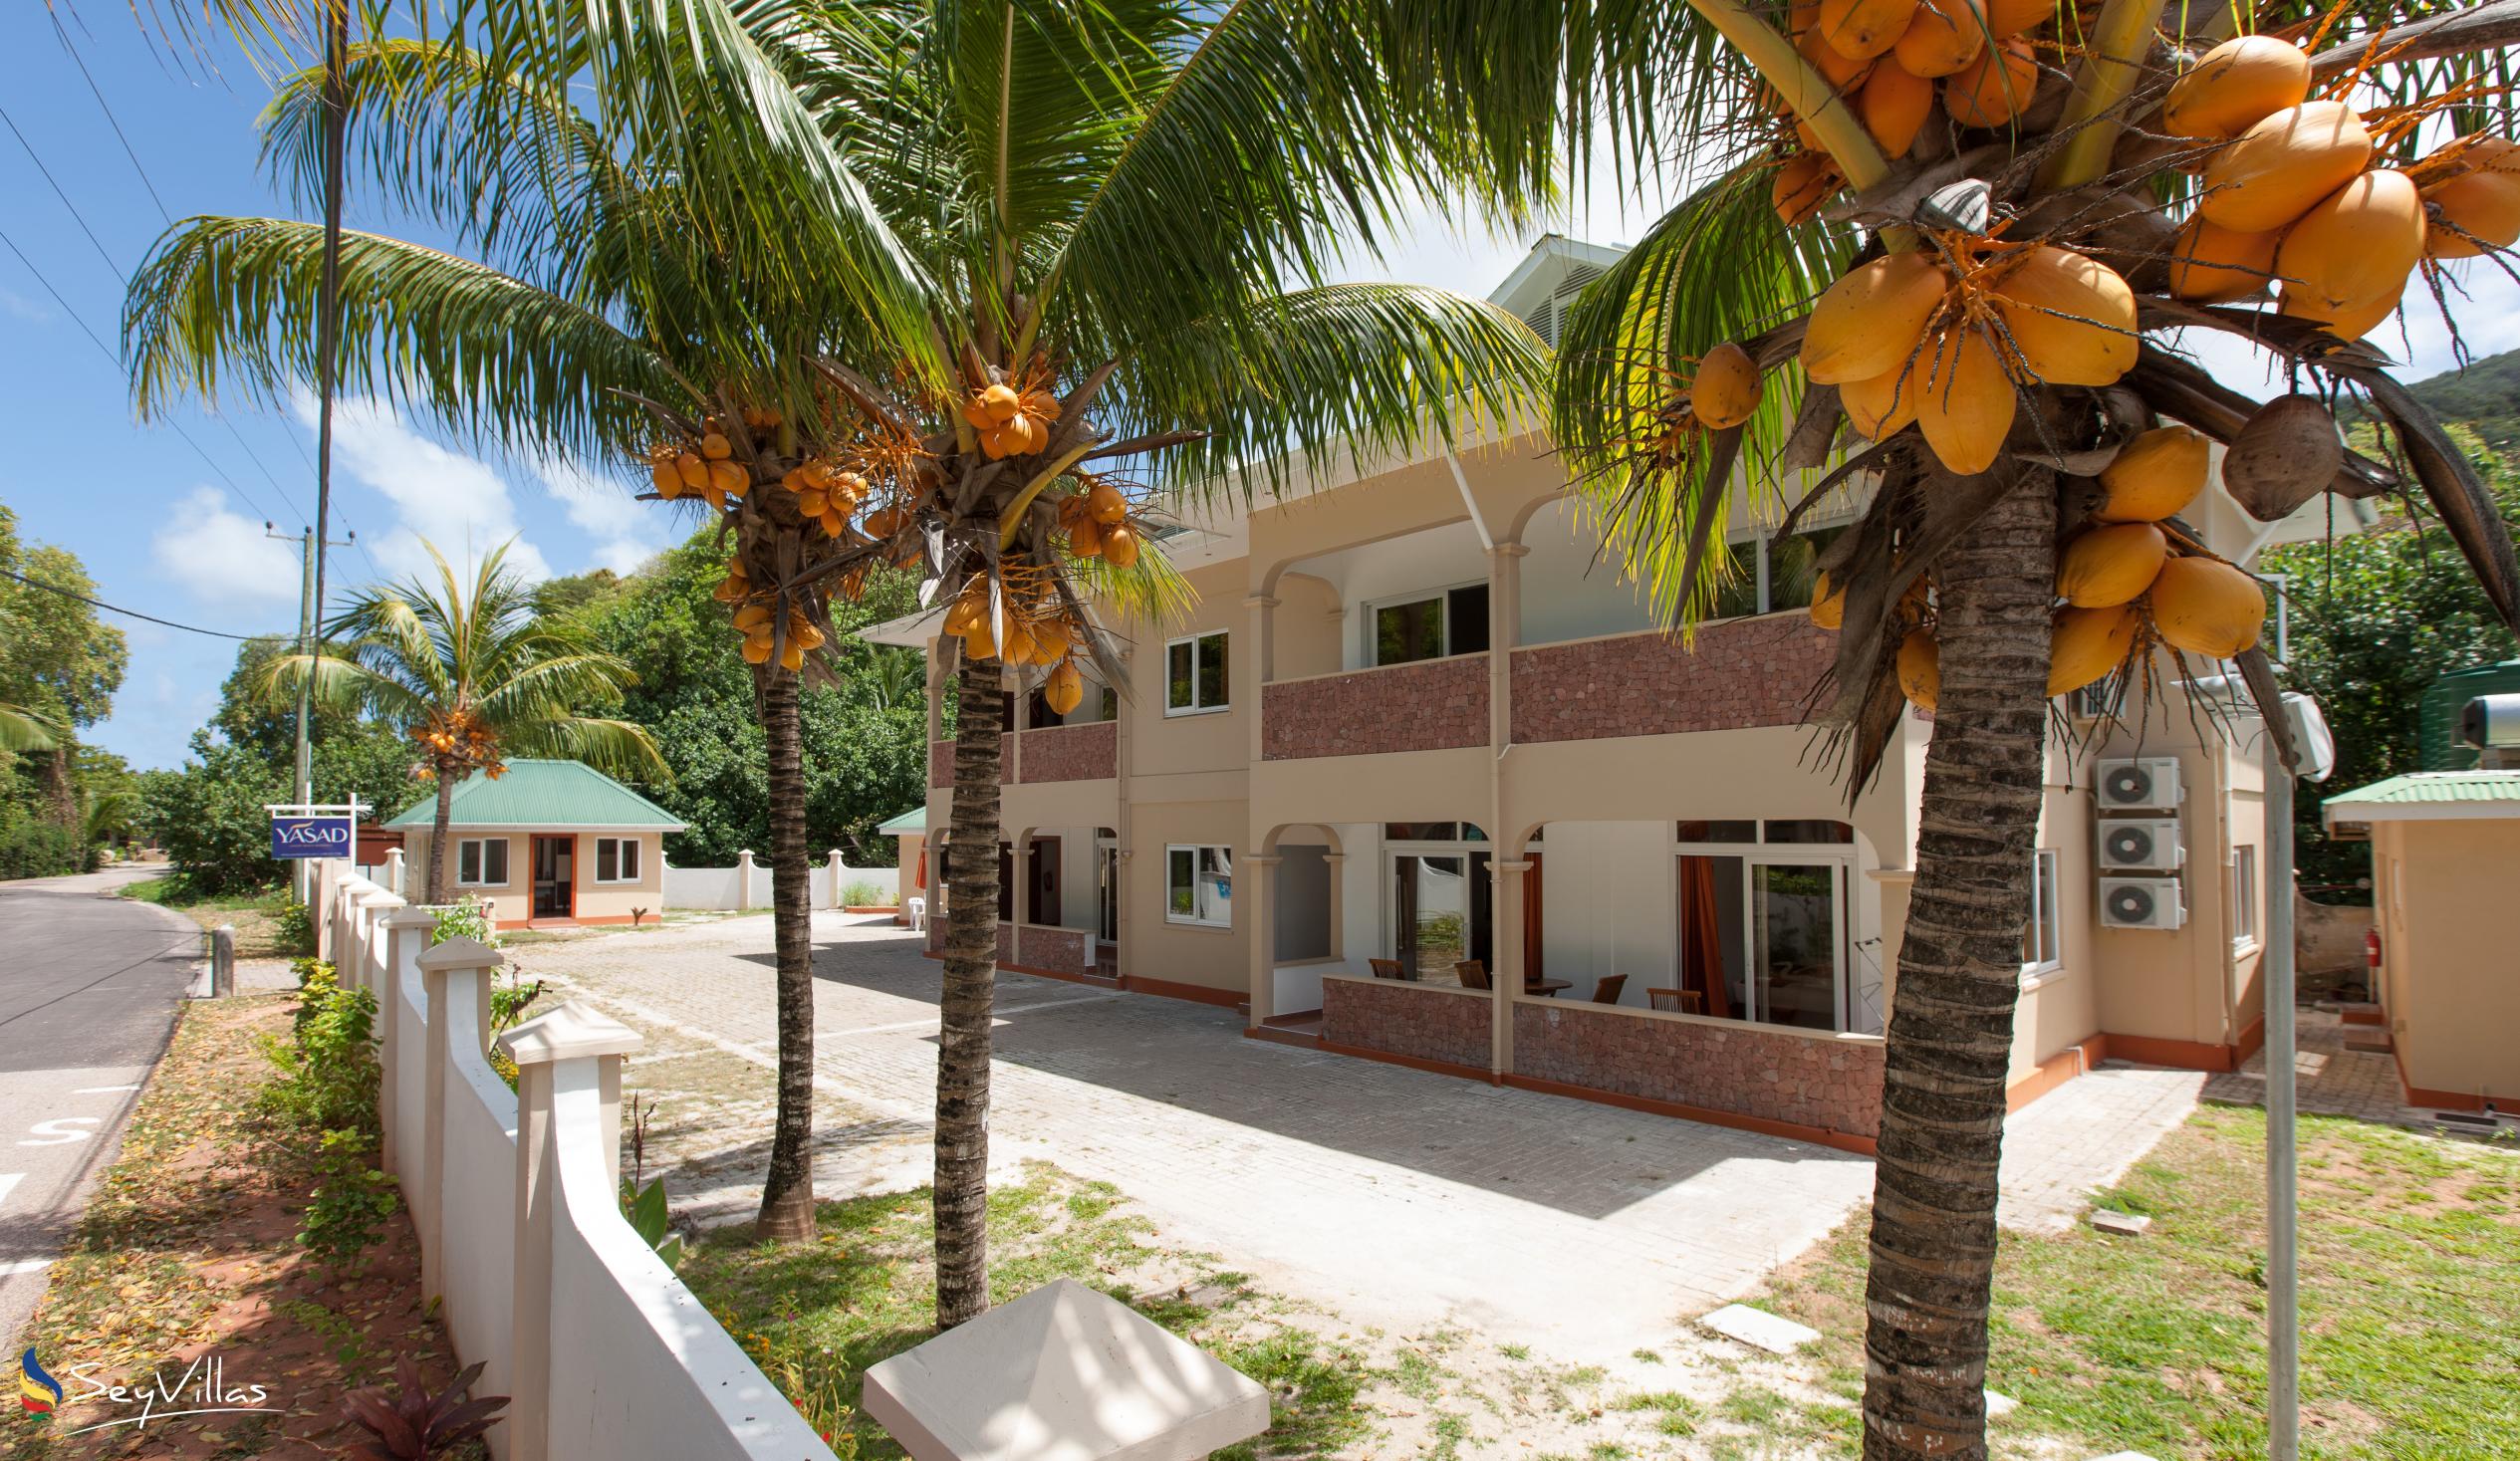 Foto 2: YASAD Luxury Beach Residence - Aussenbereich - Praslin (Seychellen)